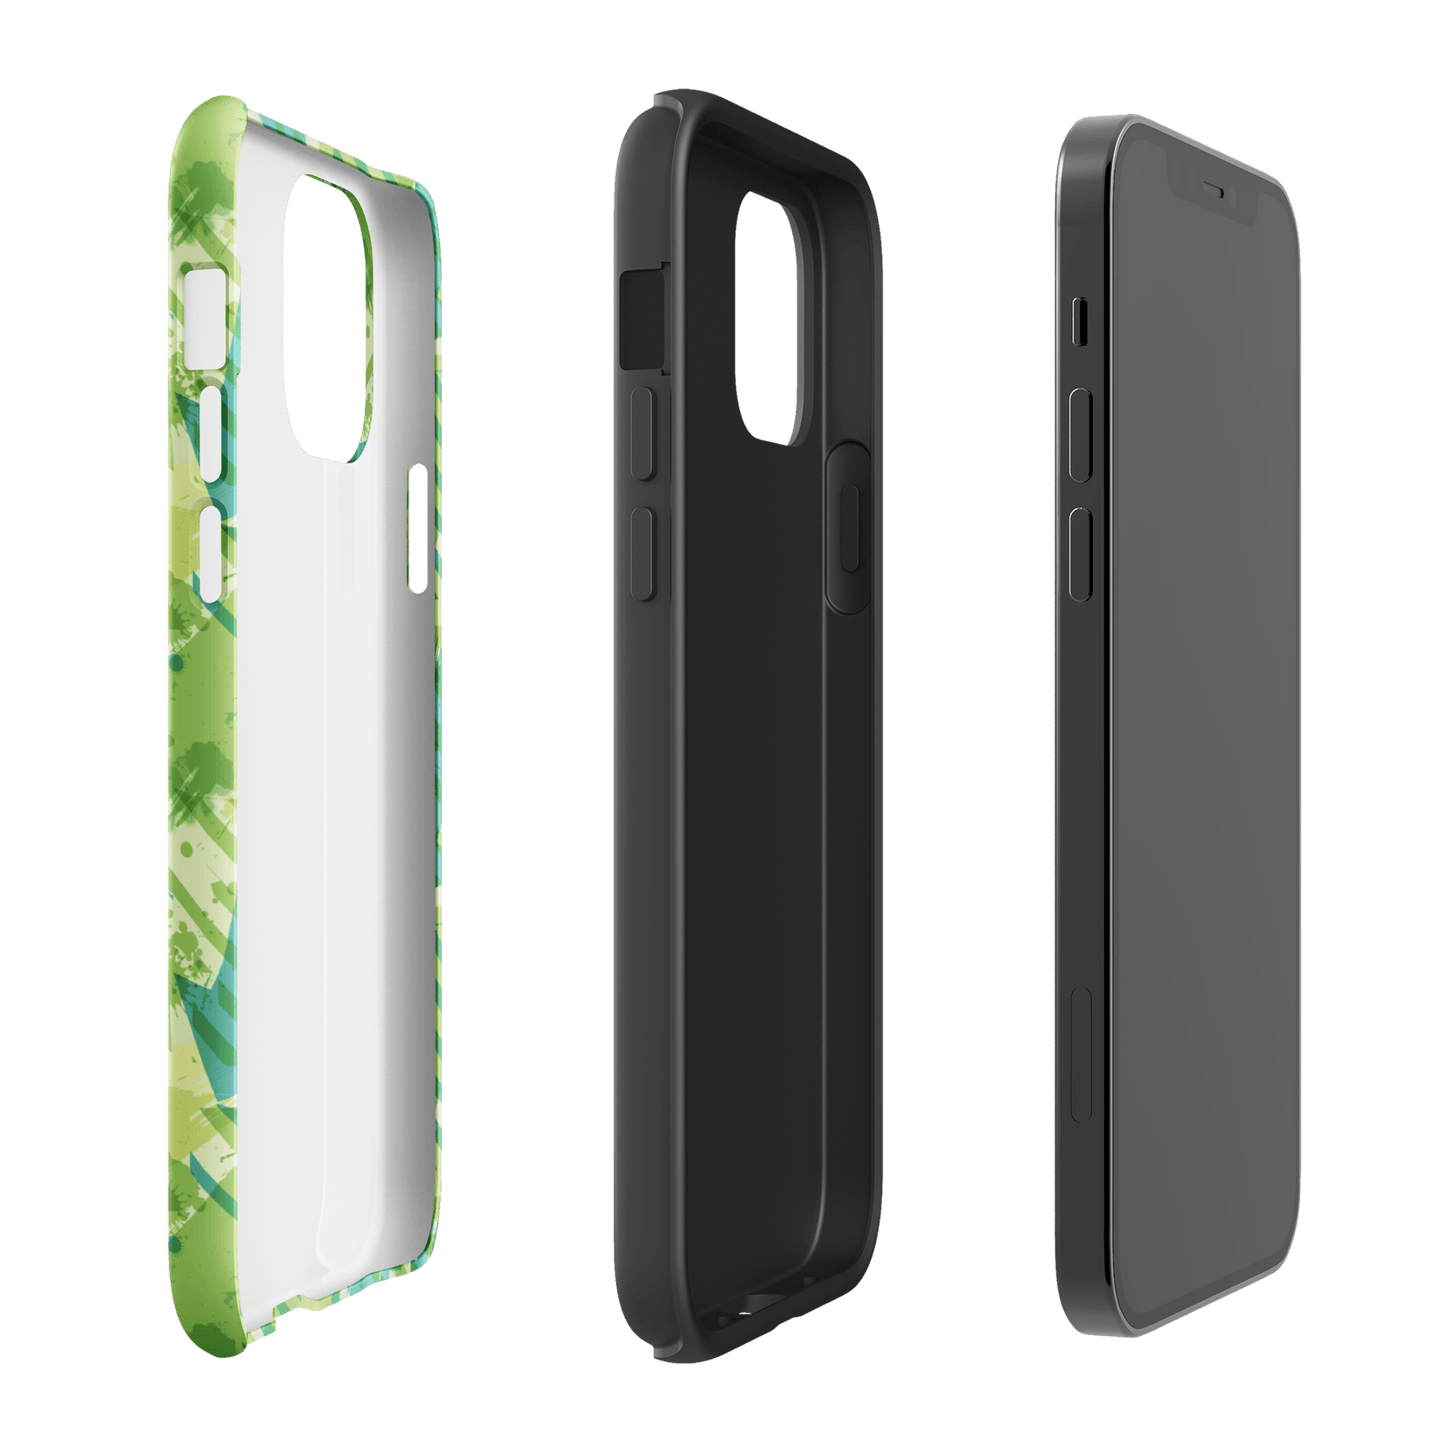 Drake & Josh Pattern Tough Phone Case - iPhone - Paramount Shop